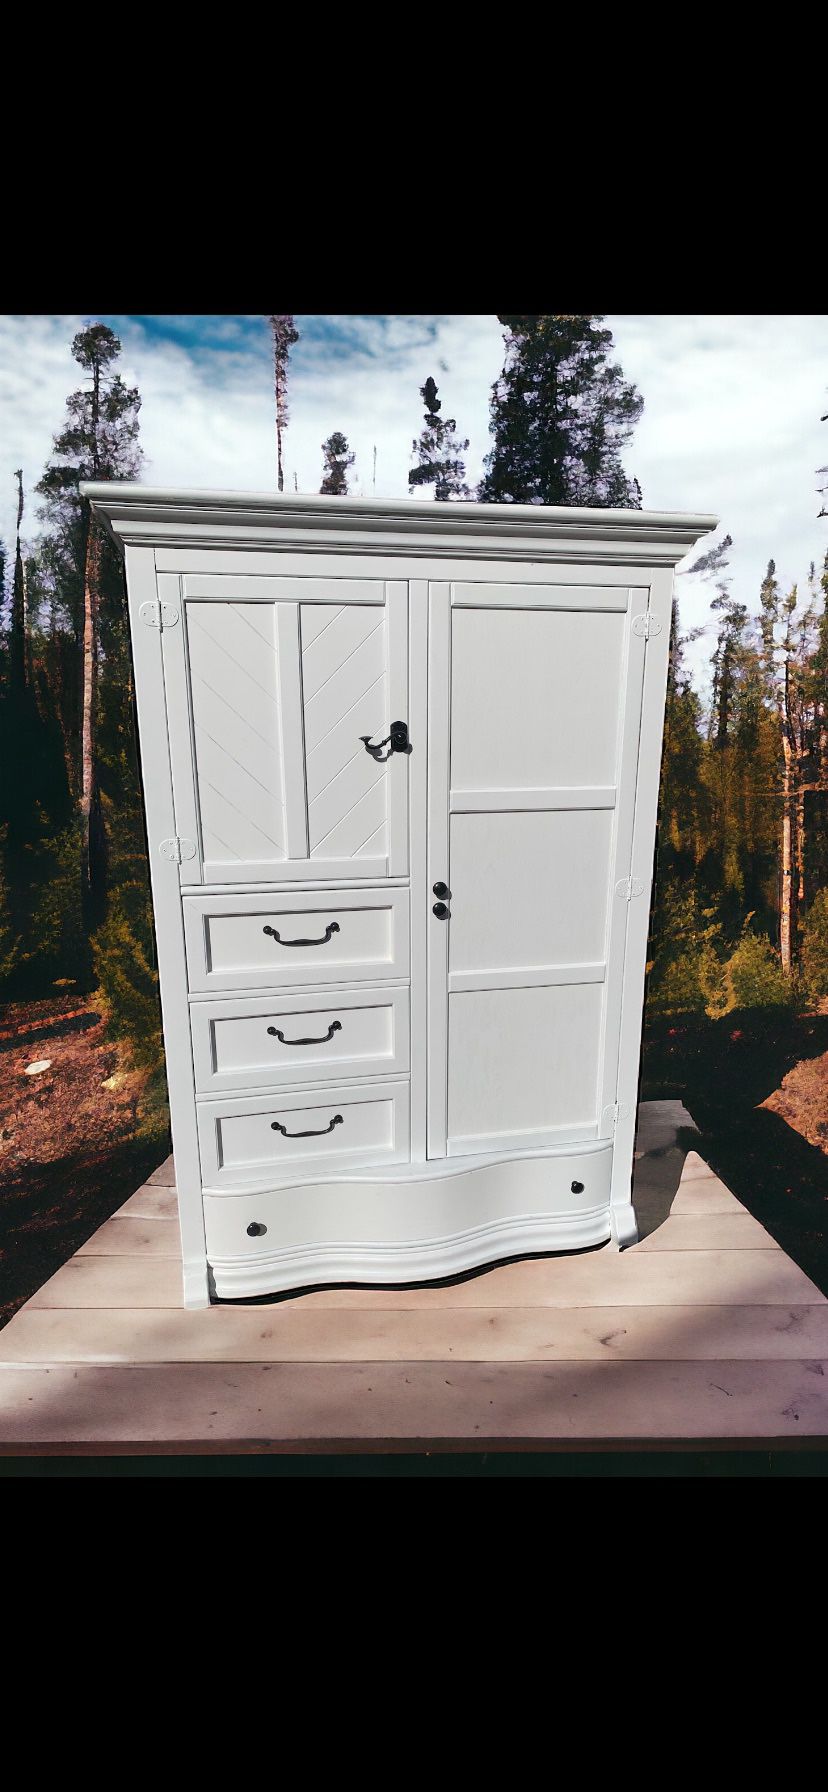 Huge Forest Designs Wardrobe Closet Dresser Cabinet 53x23x73 White New